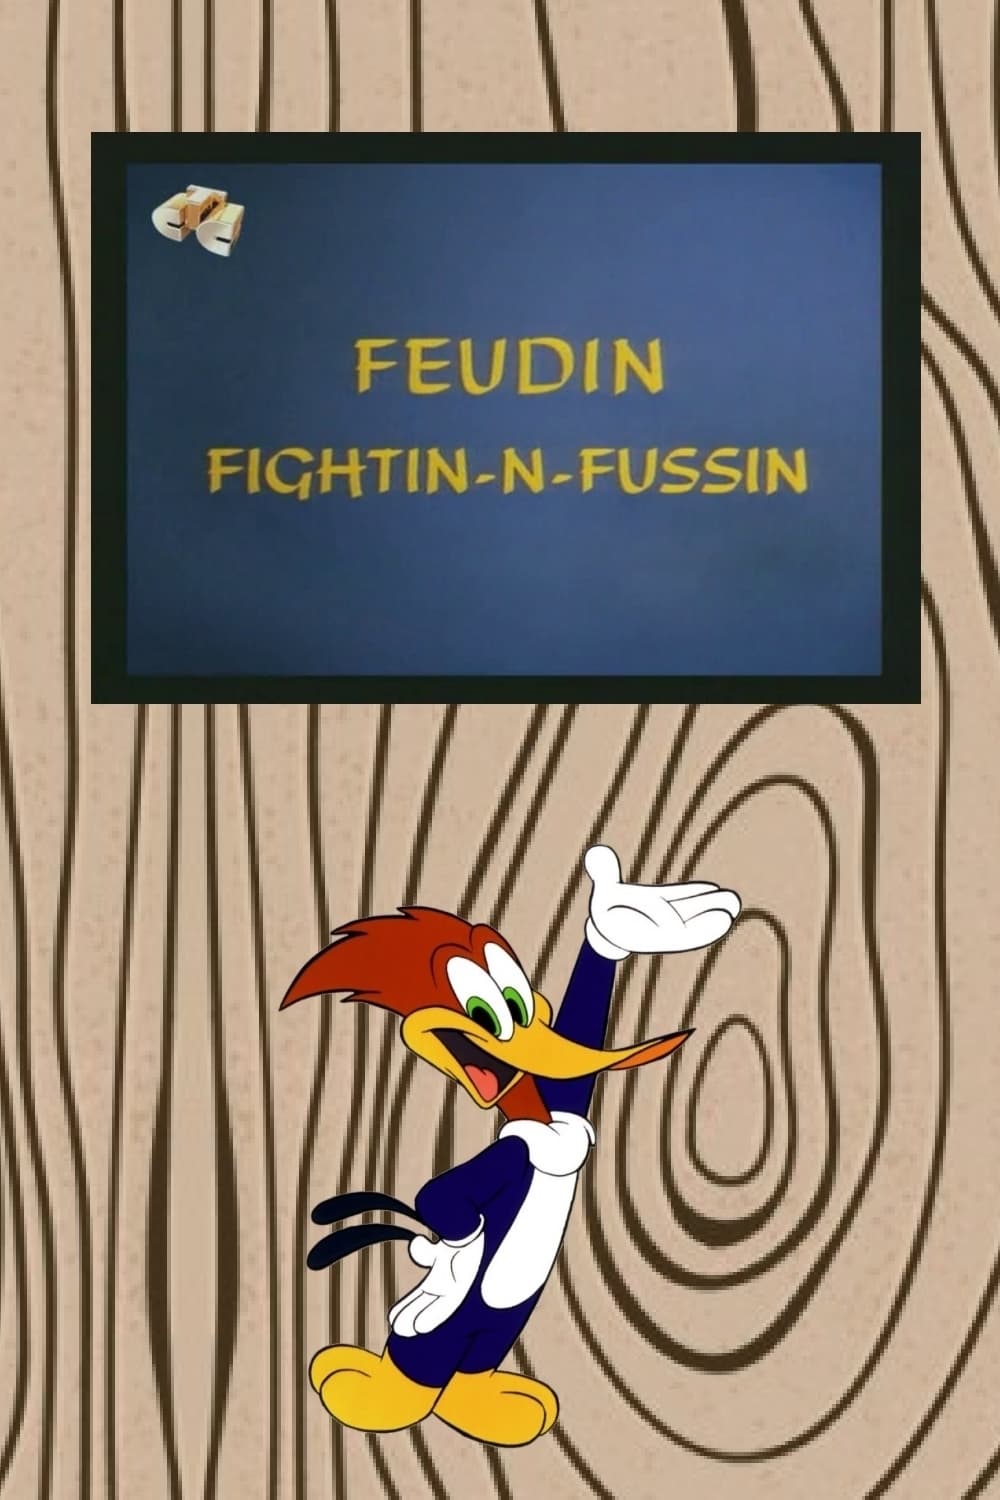 Feudin Fightin-N-Fussin (1968)